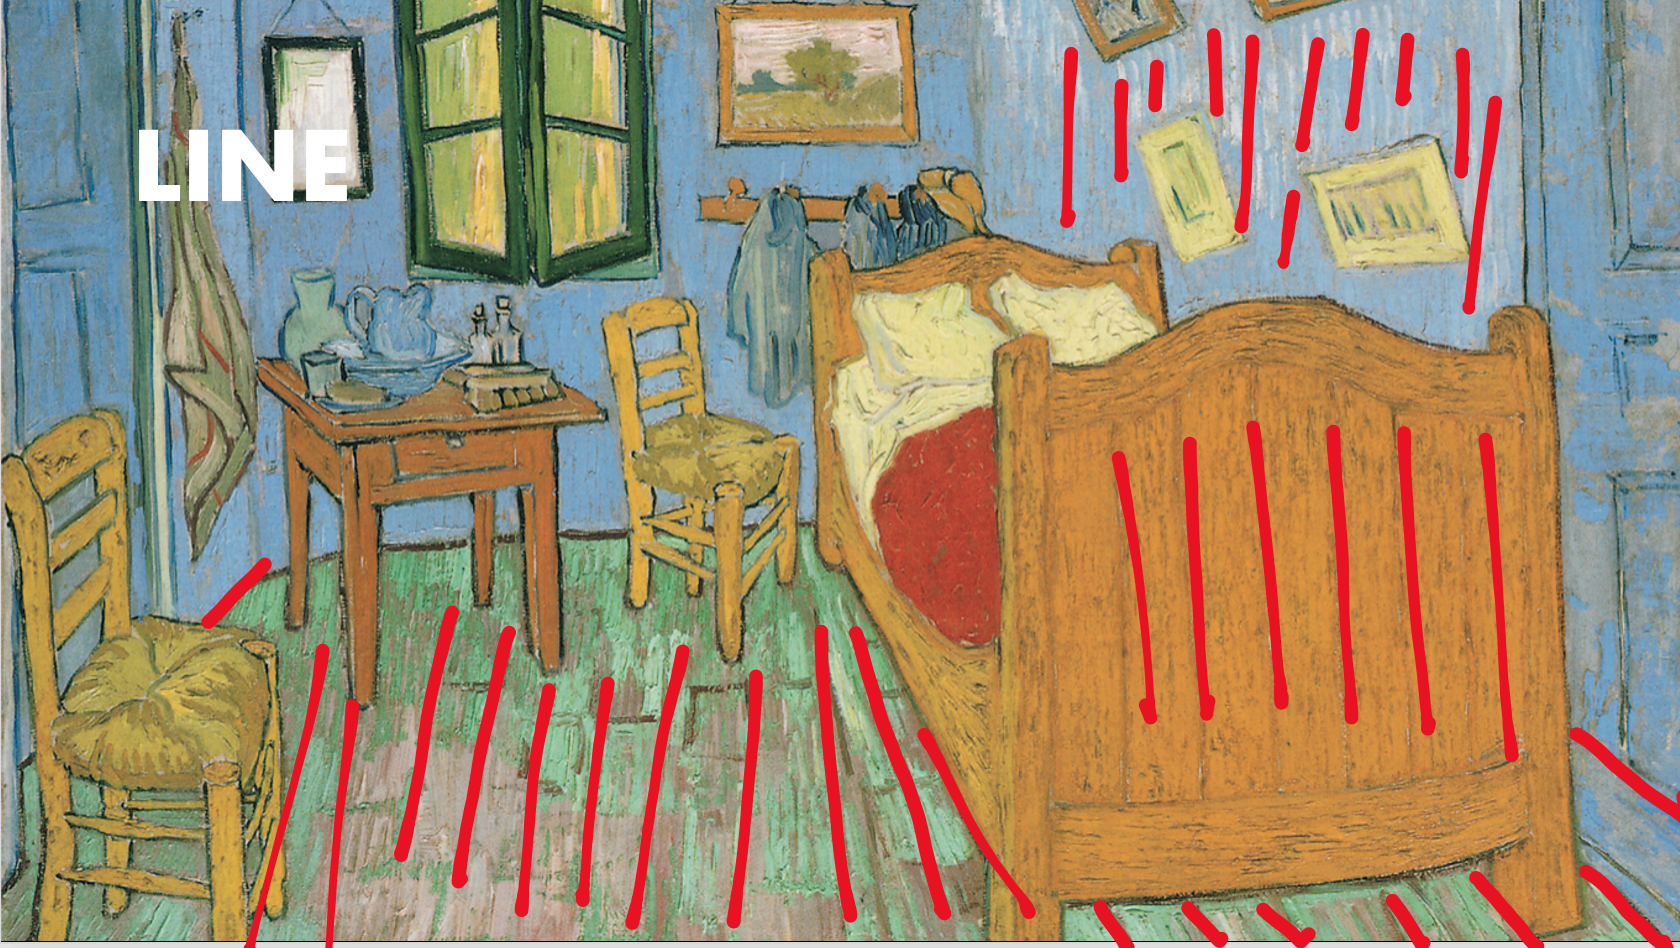 Analysis of Van Gogh's The bedrooom 